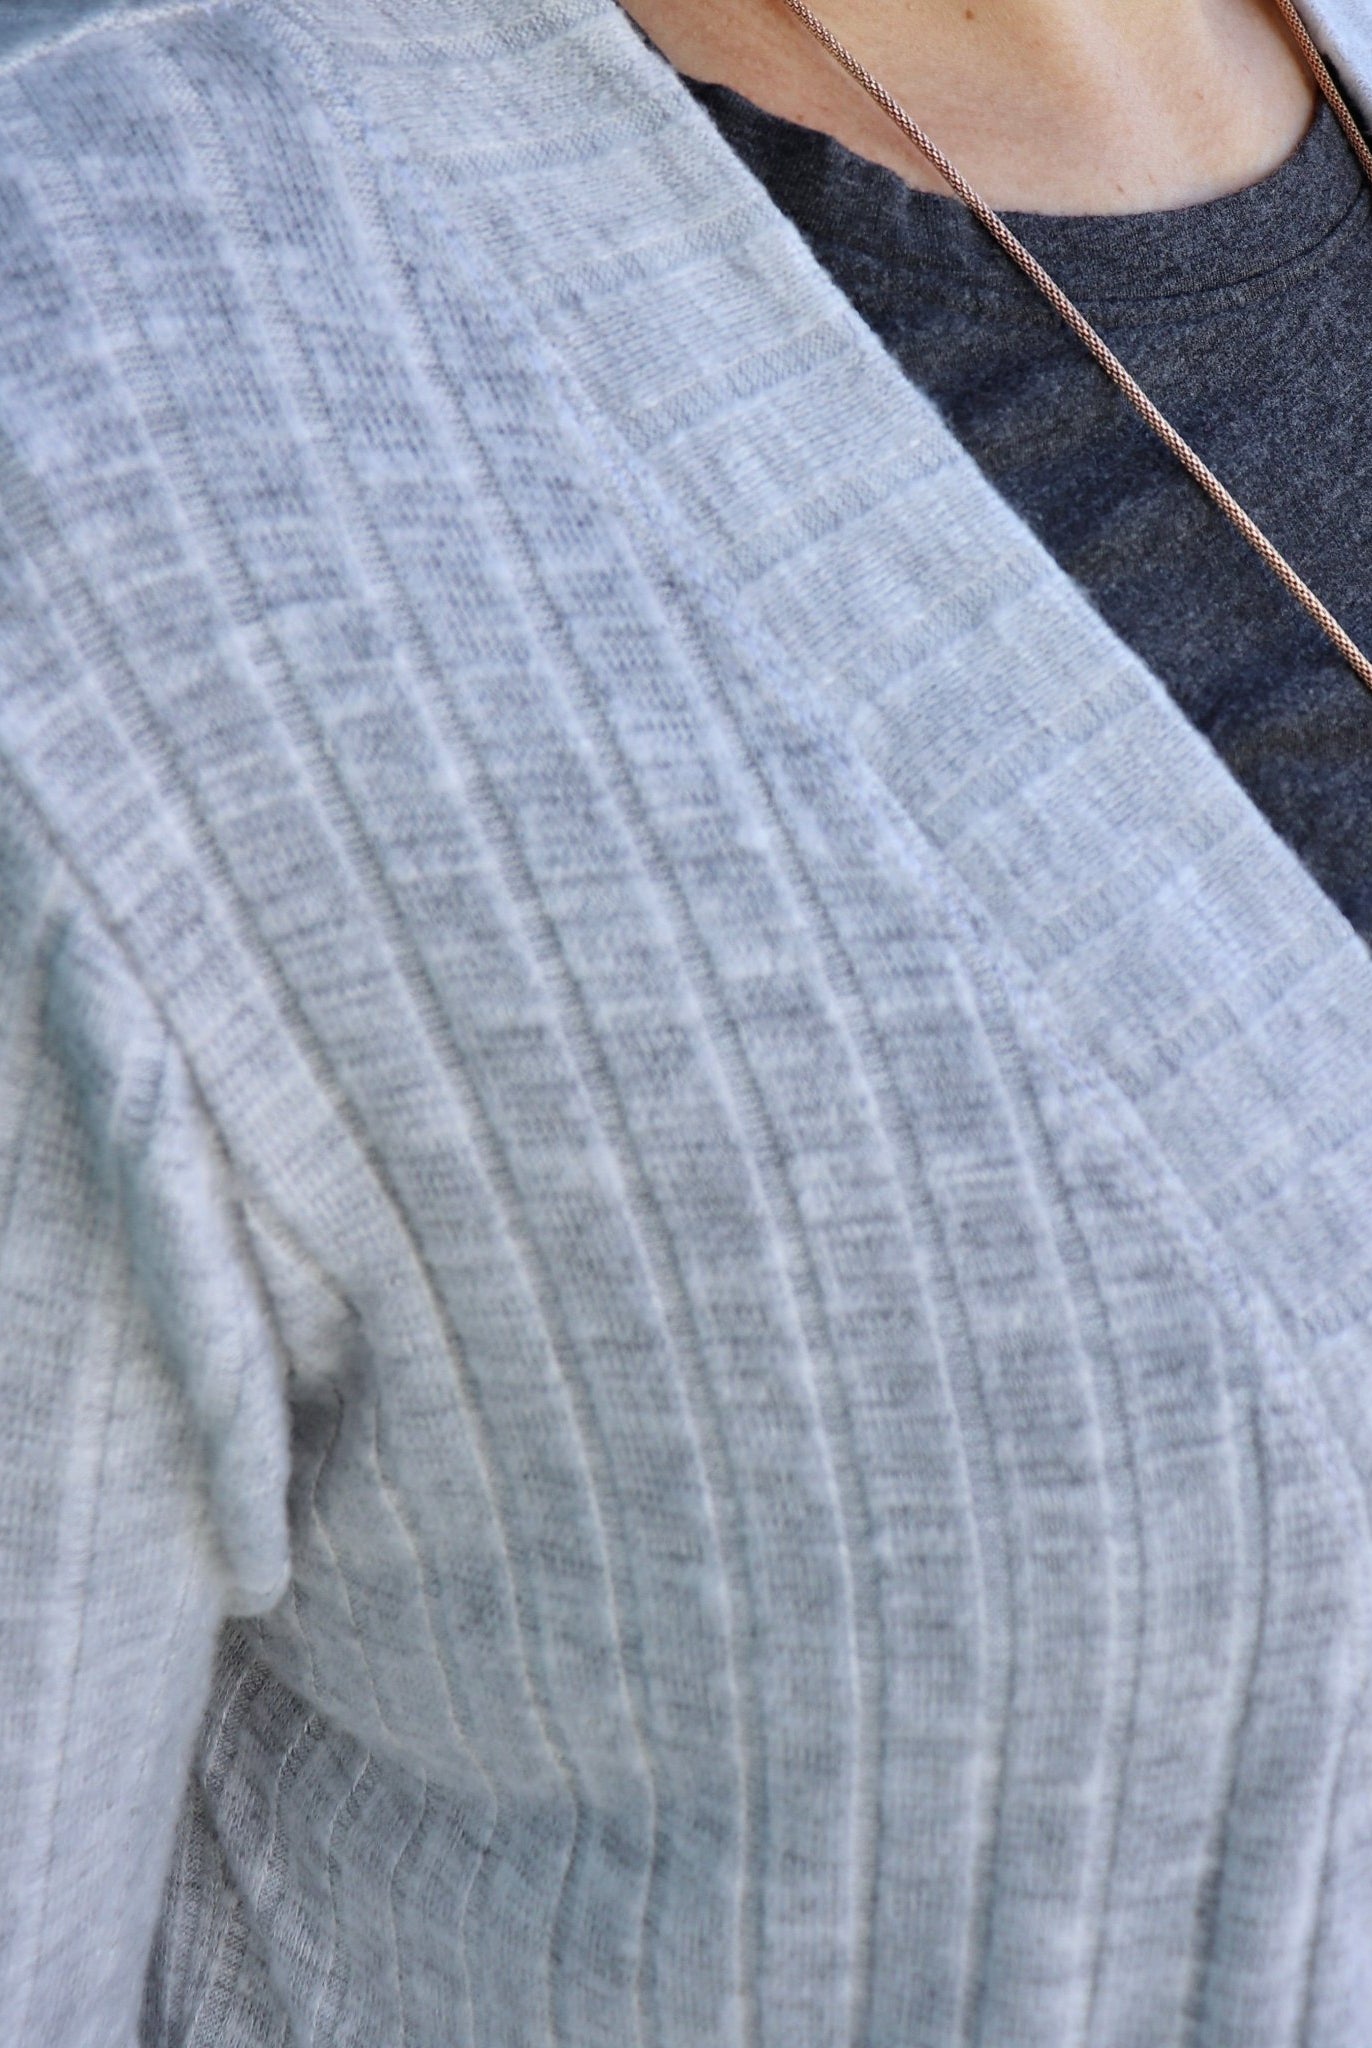 Gray Fog 9x4 Brushed Rib Knit Fabric. BRIB-201-GRY - Boho Fabrics